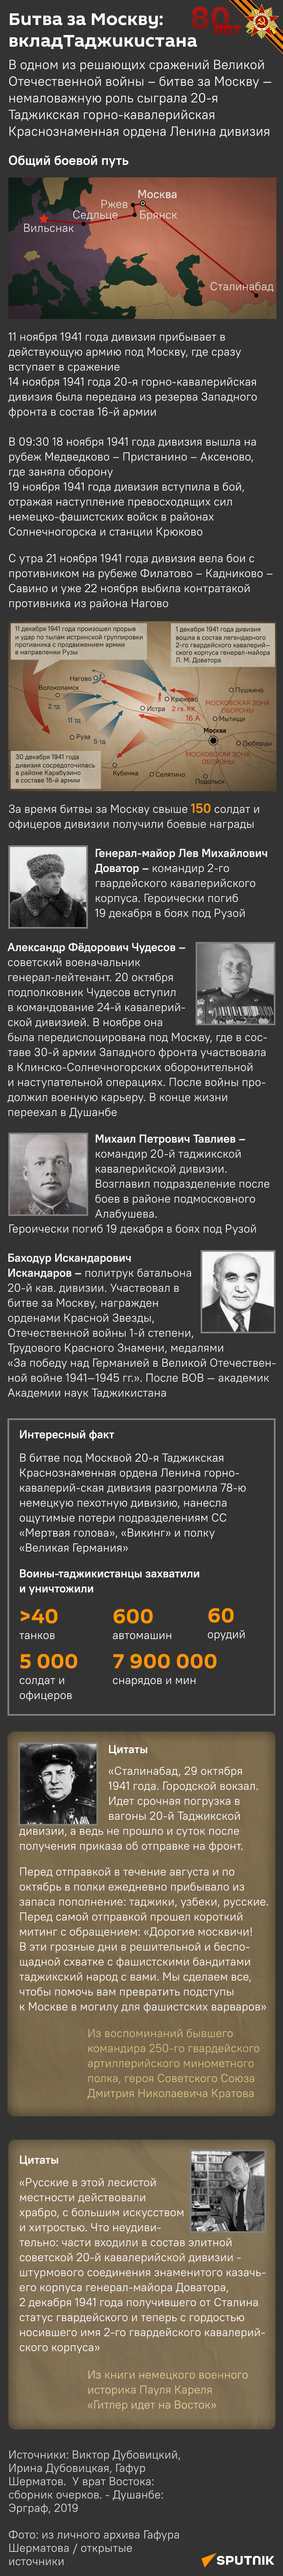 Битва за Москву: вклад Таджикистана - Sputnik Таджикистан